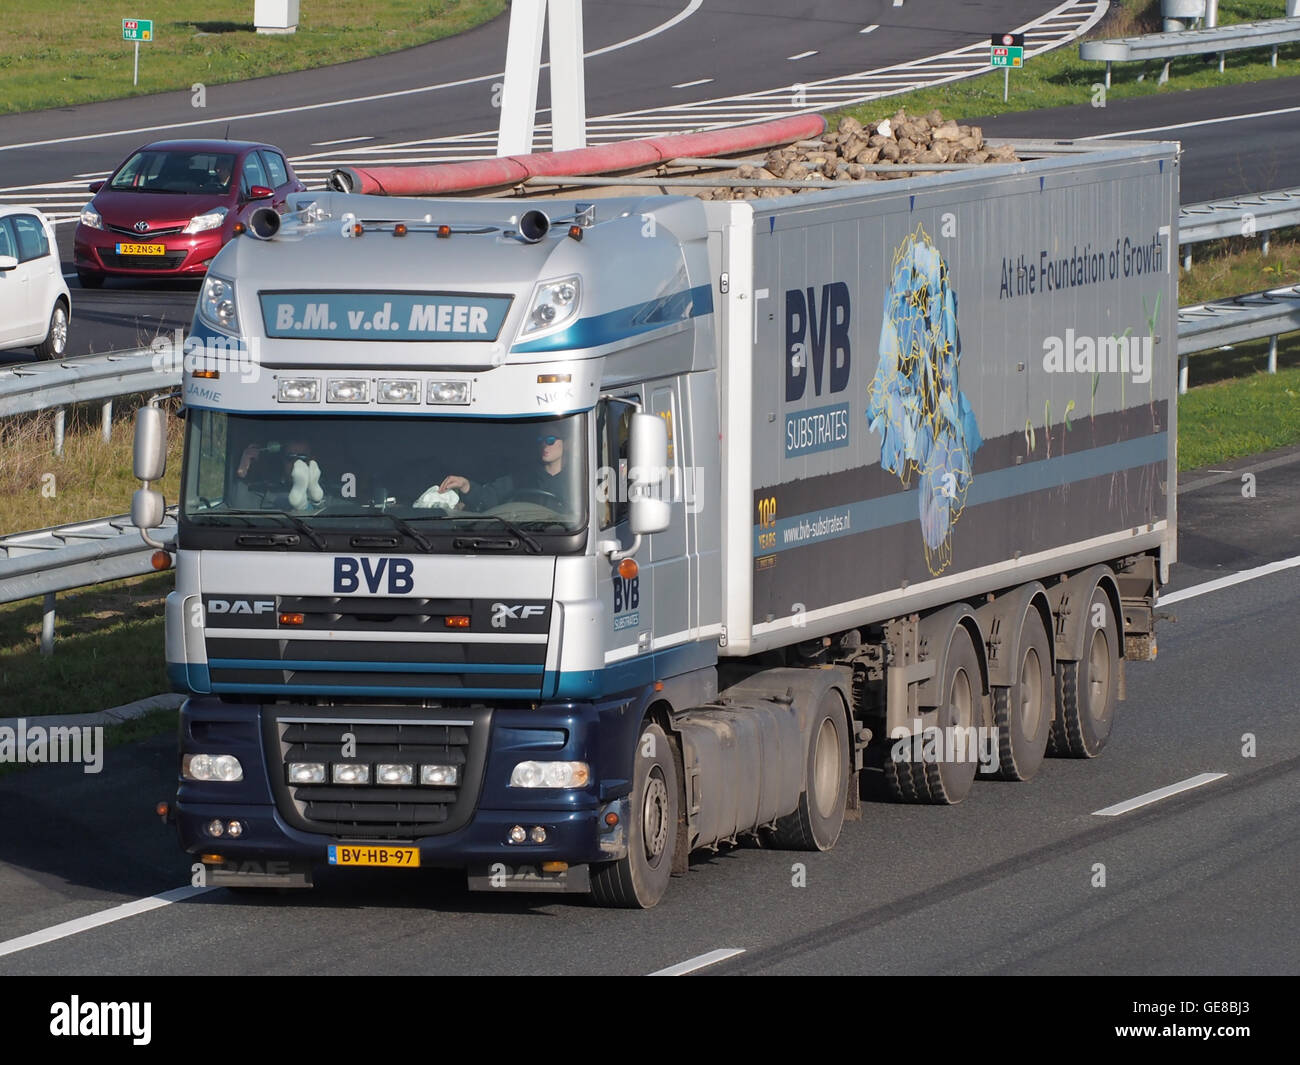 DAF FX, BM vd Meer, BVB pic2 Stock Photo